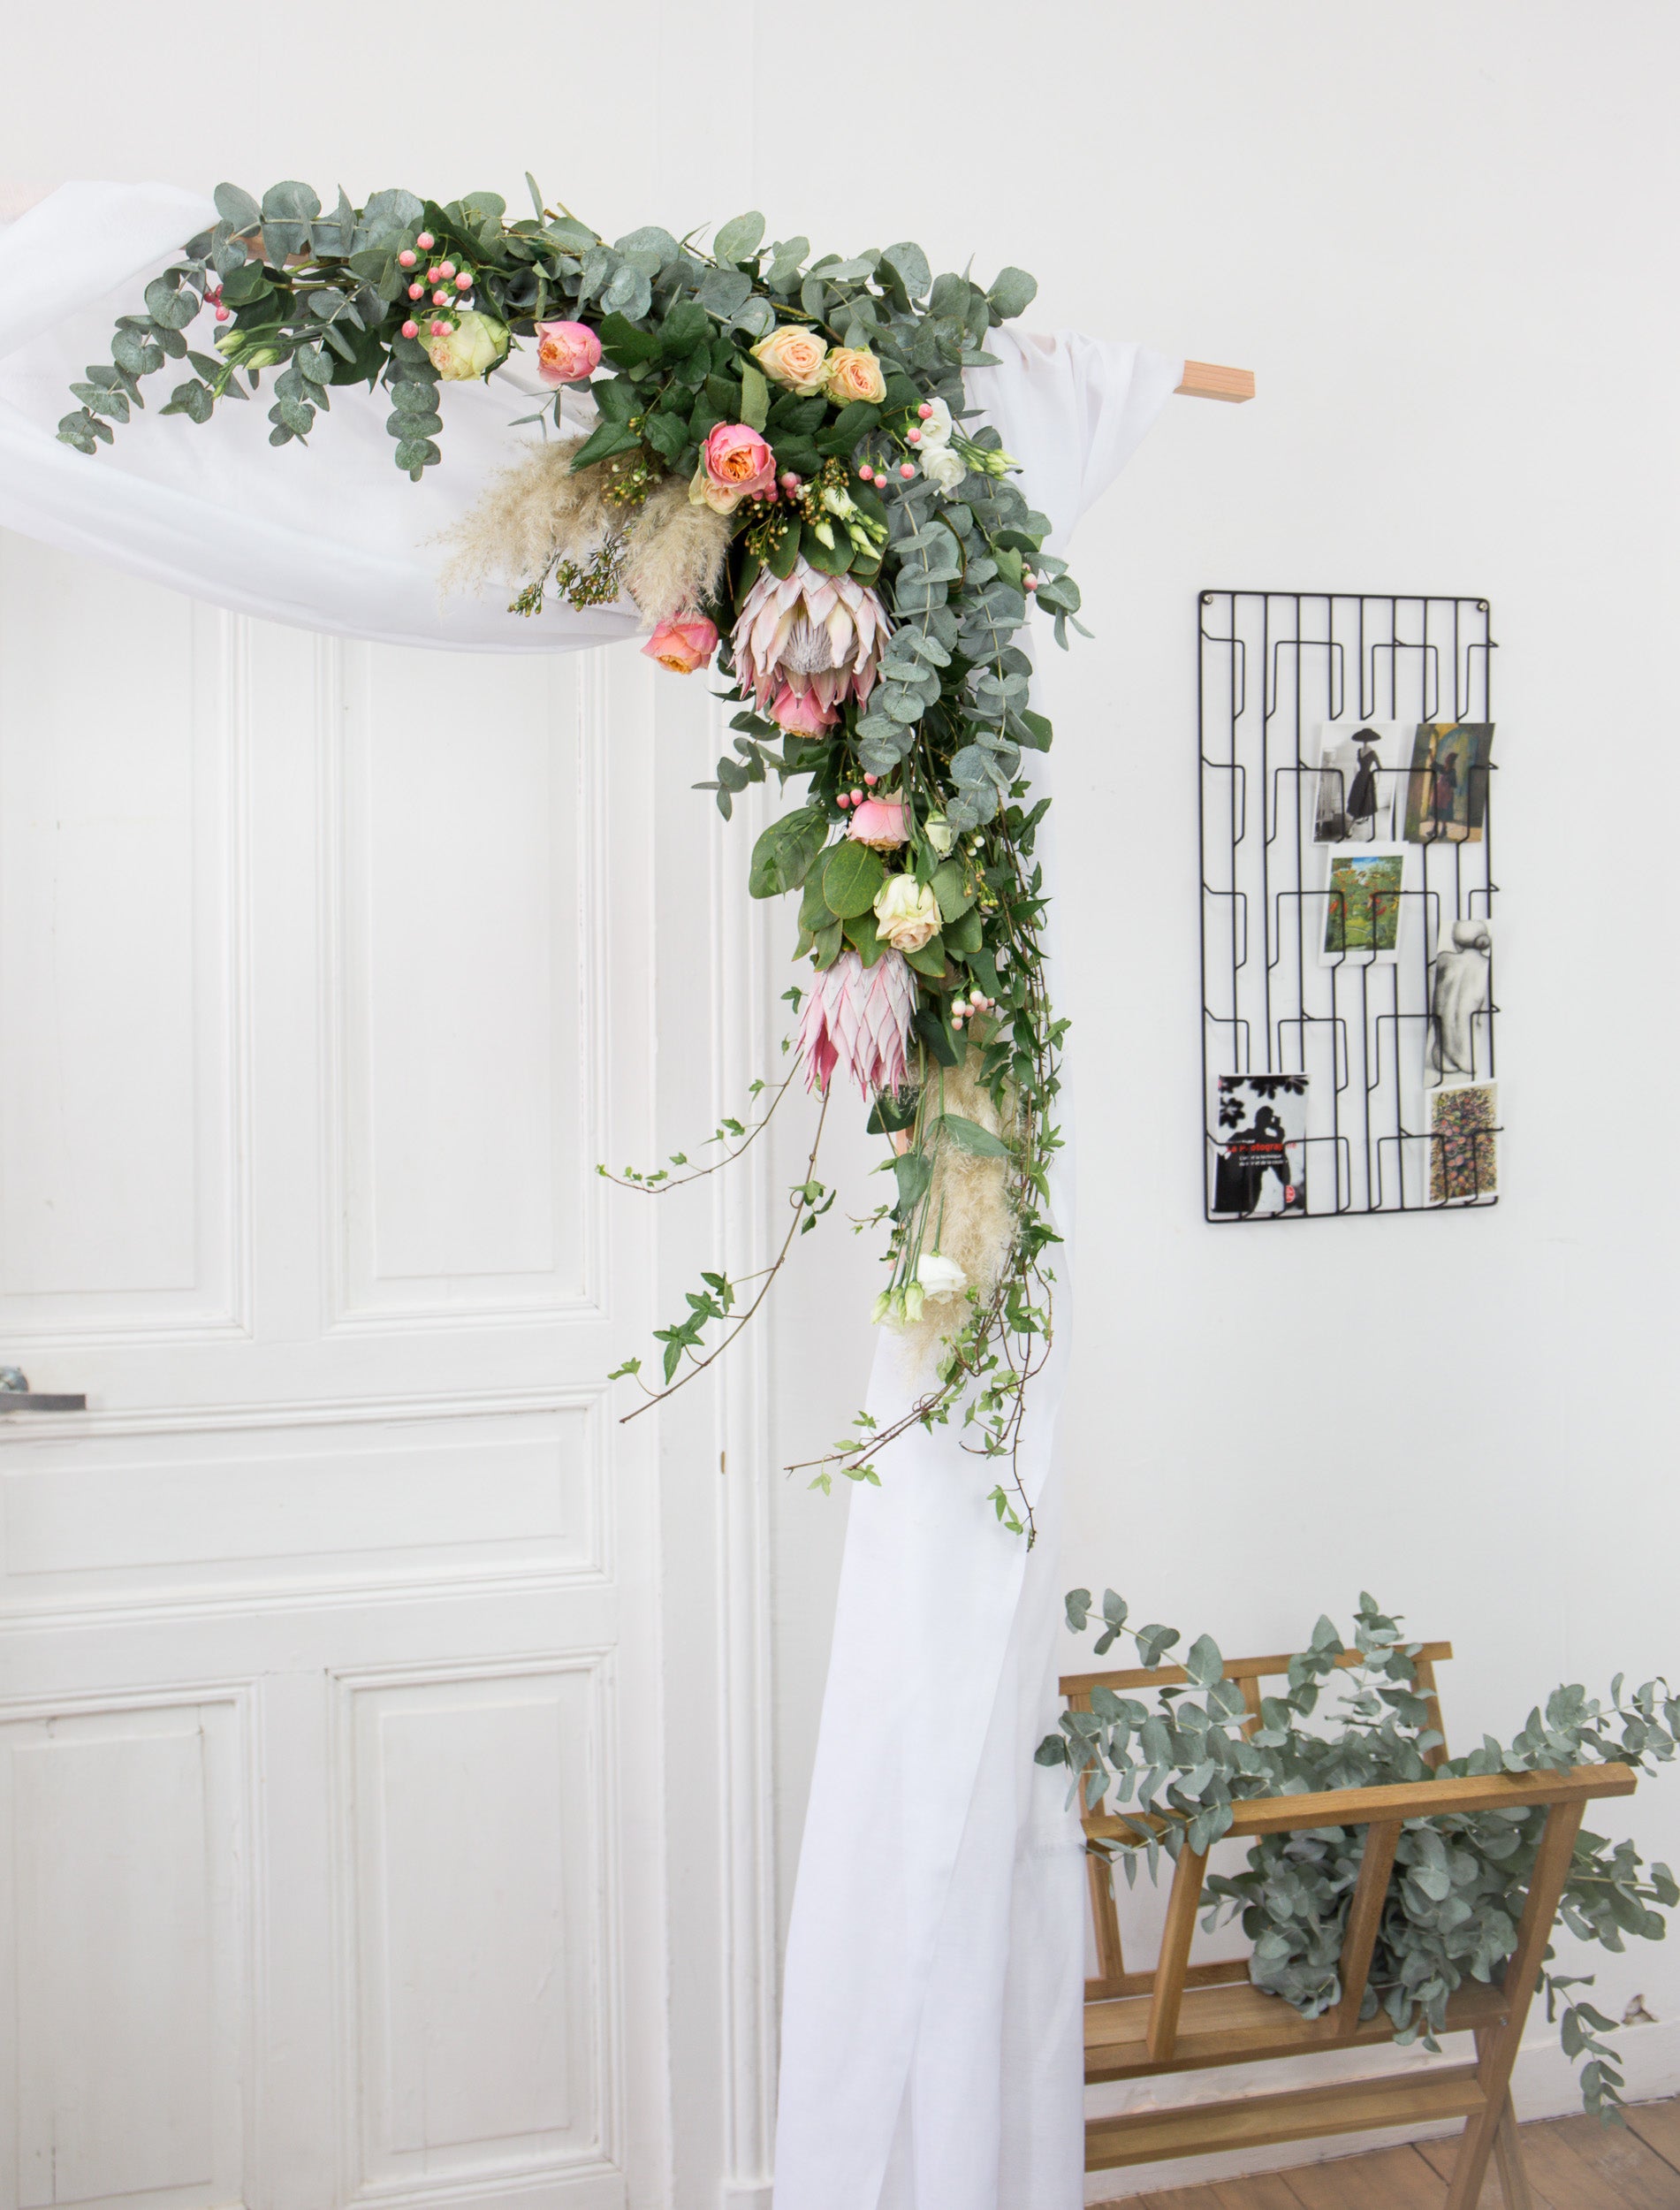 DIY : comment réaliser une arche fleurie pour mon mariage